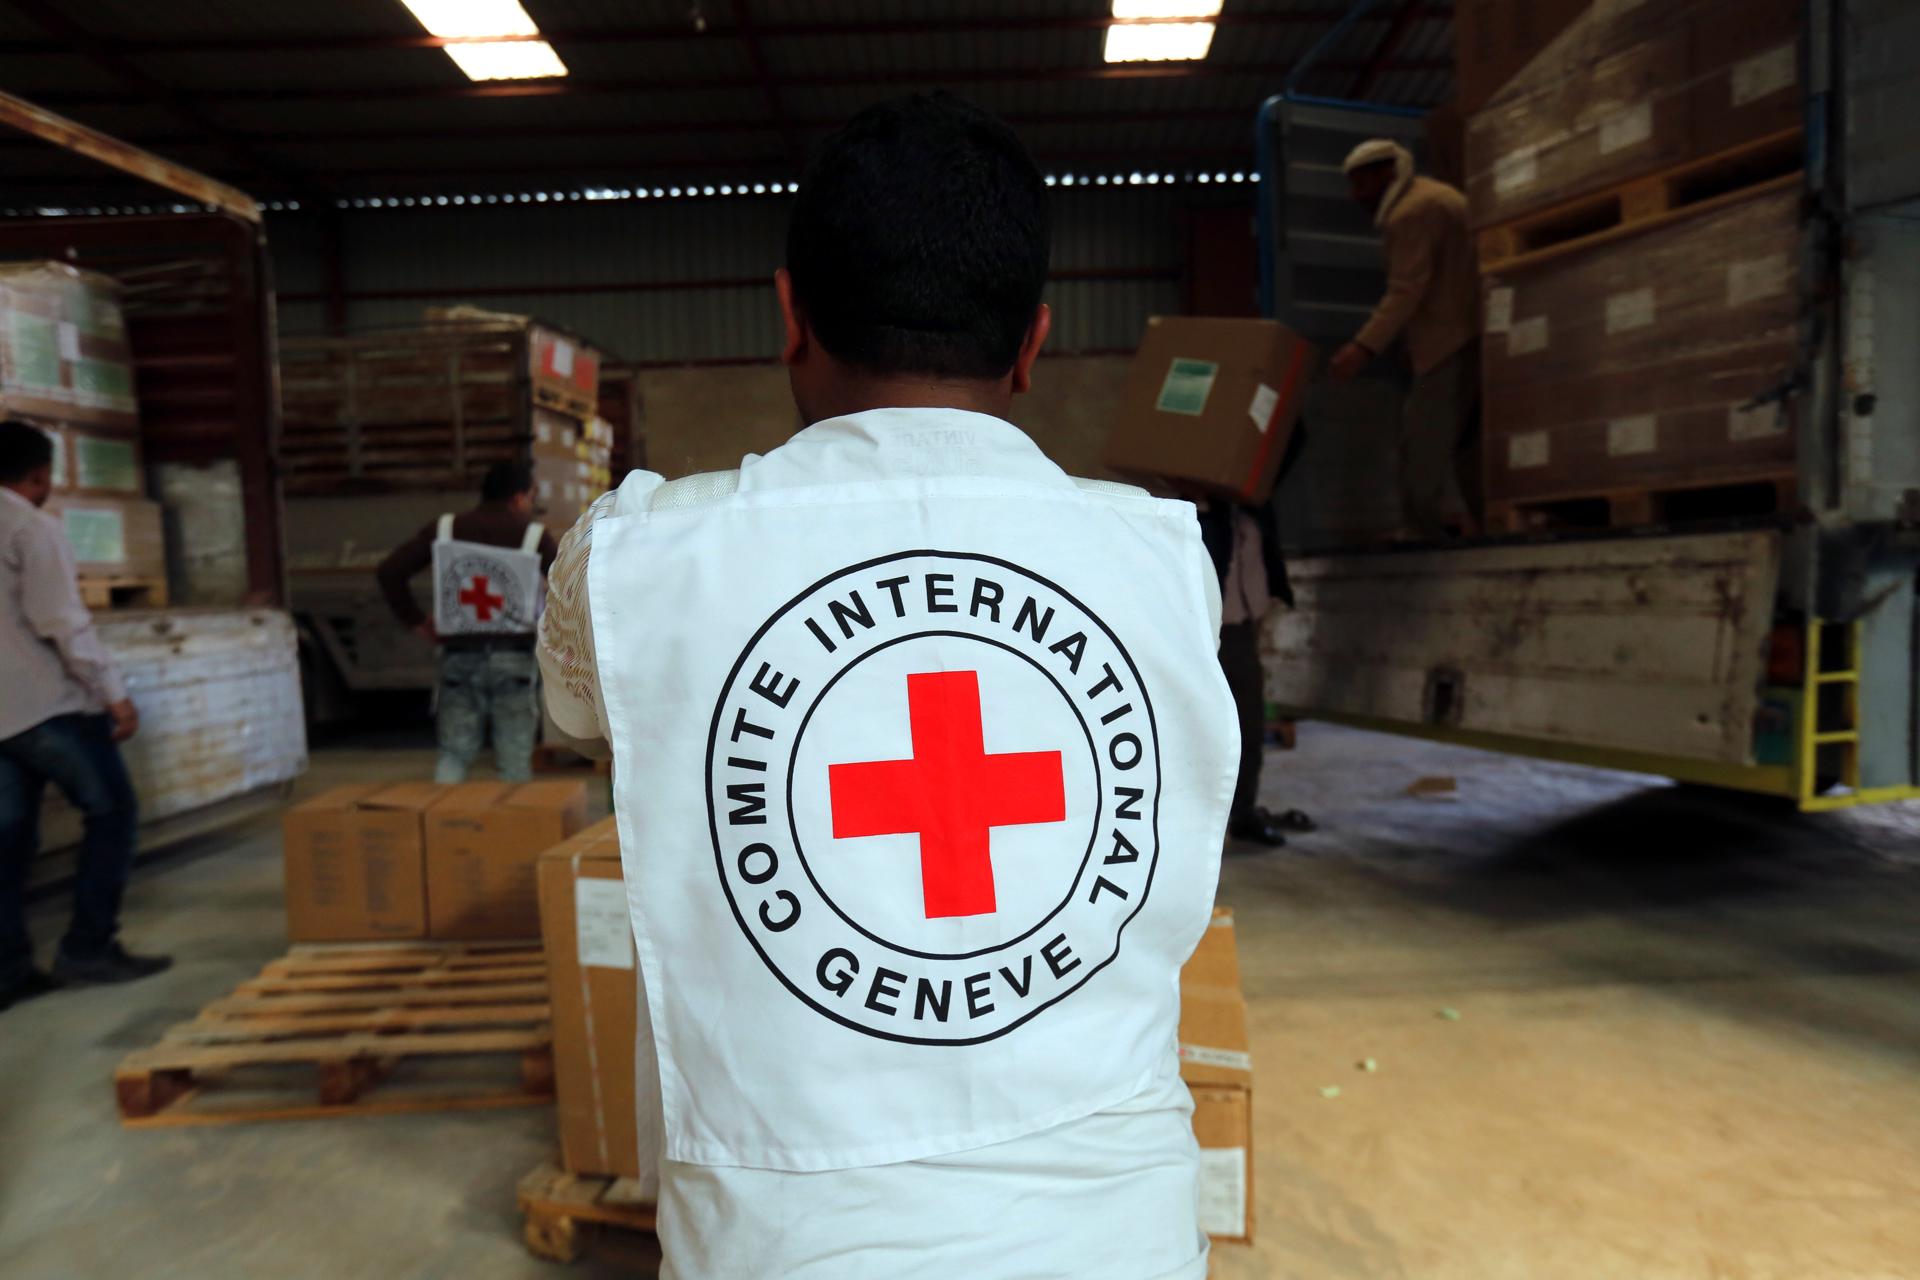 La Cruz Roja Internacional tendrá una delegación en Haití a partir de enero próximo